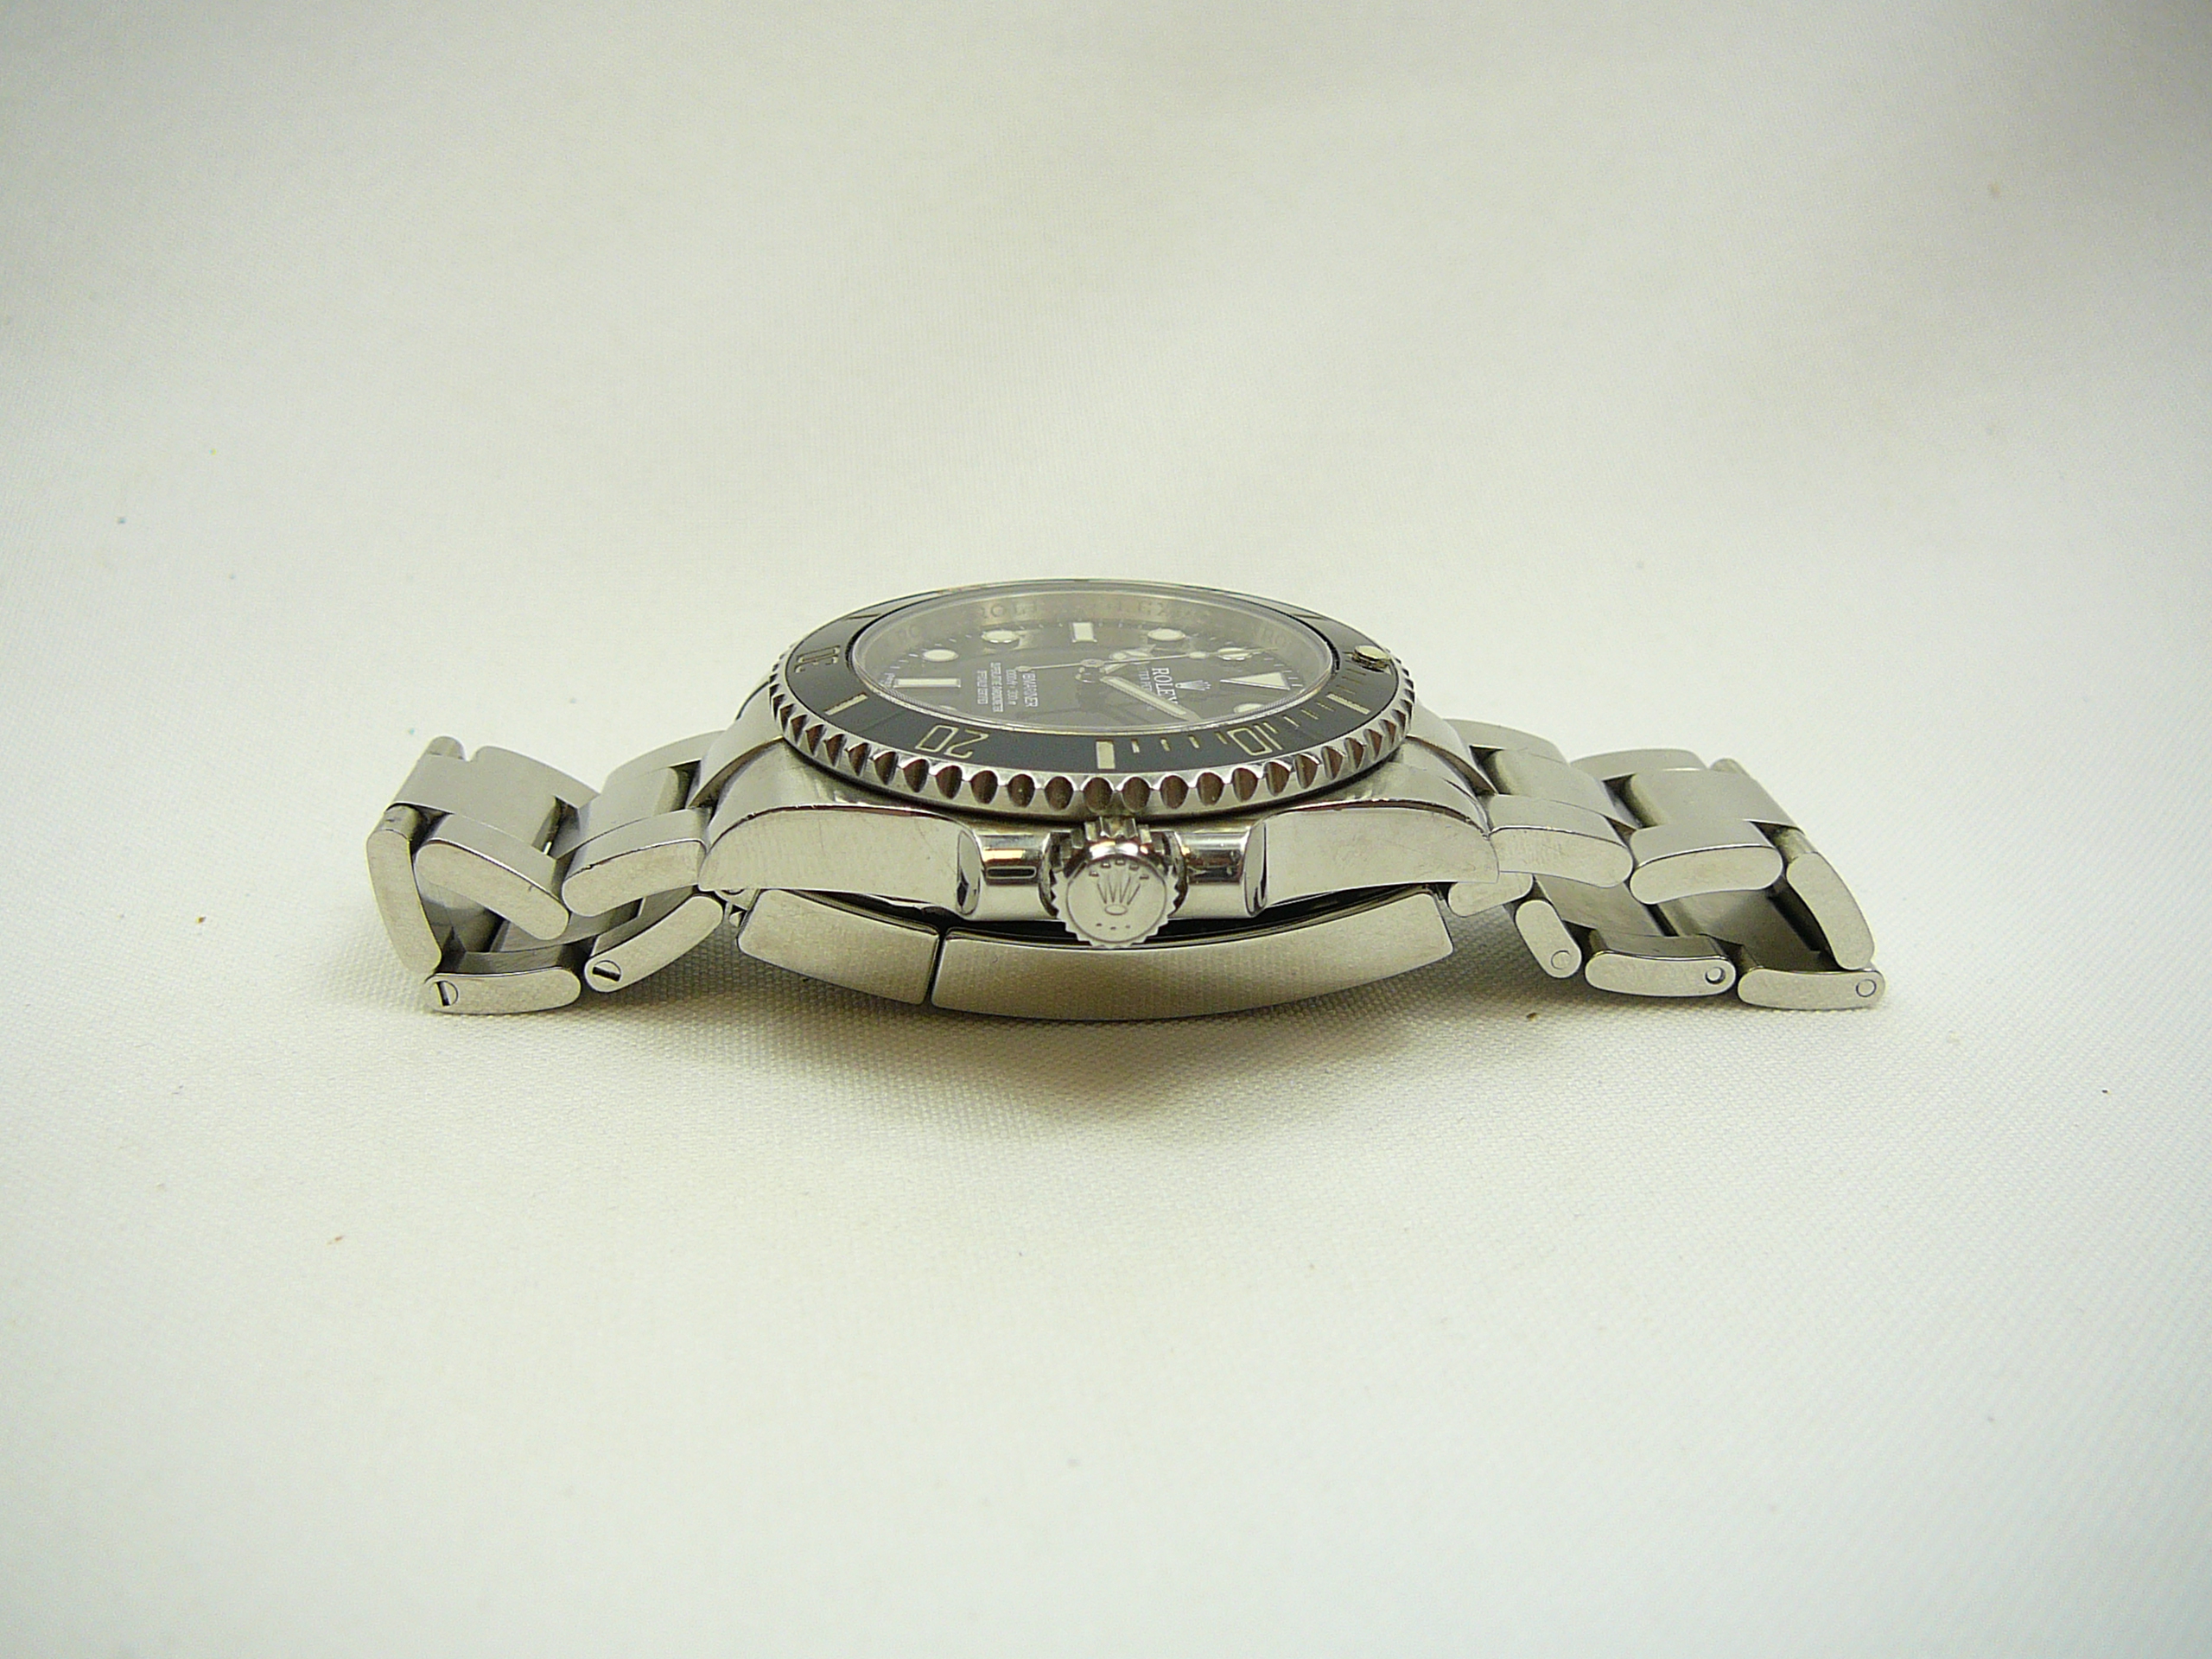 Gents Rolex Wrist Watch - Image 3 of 6